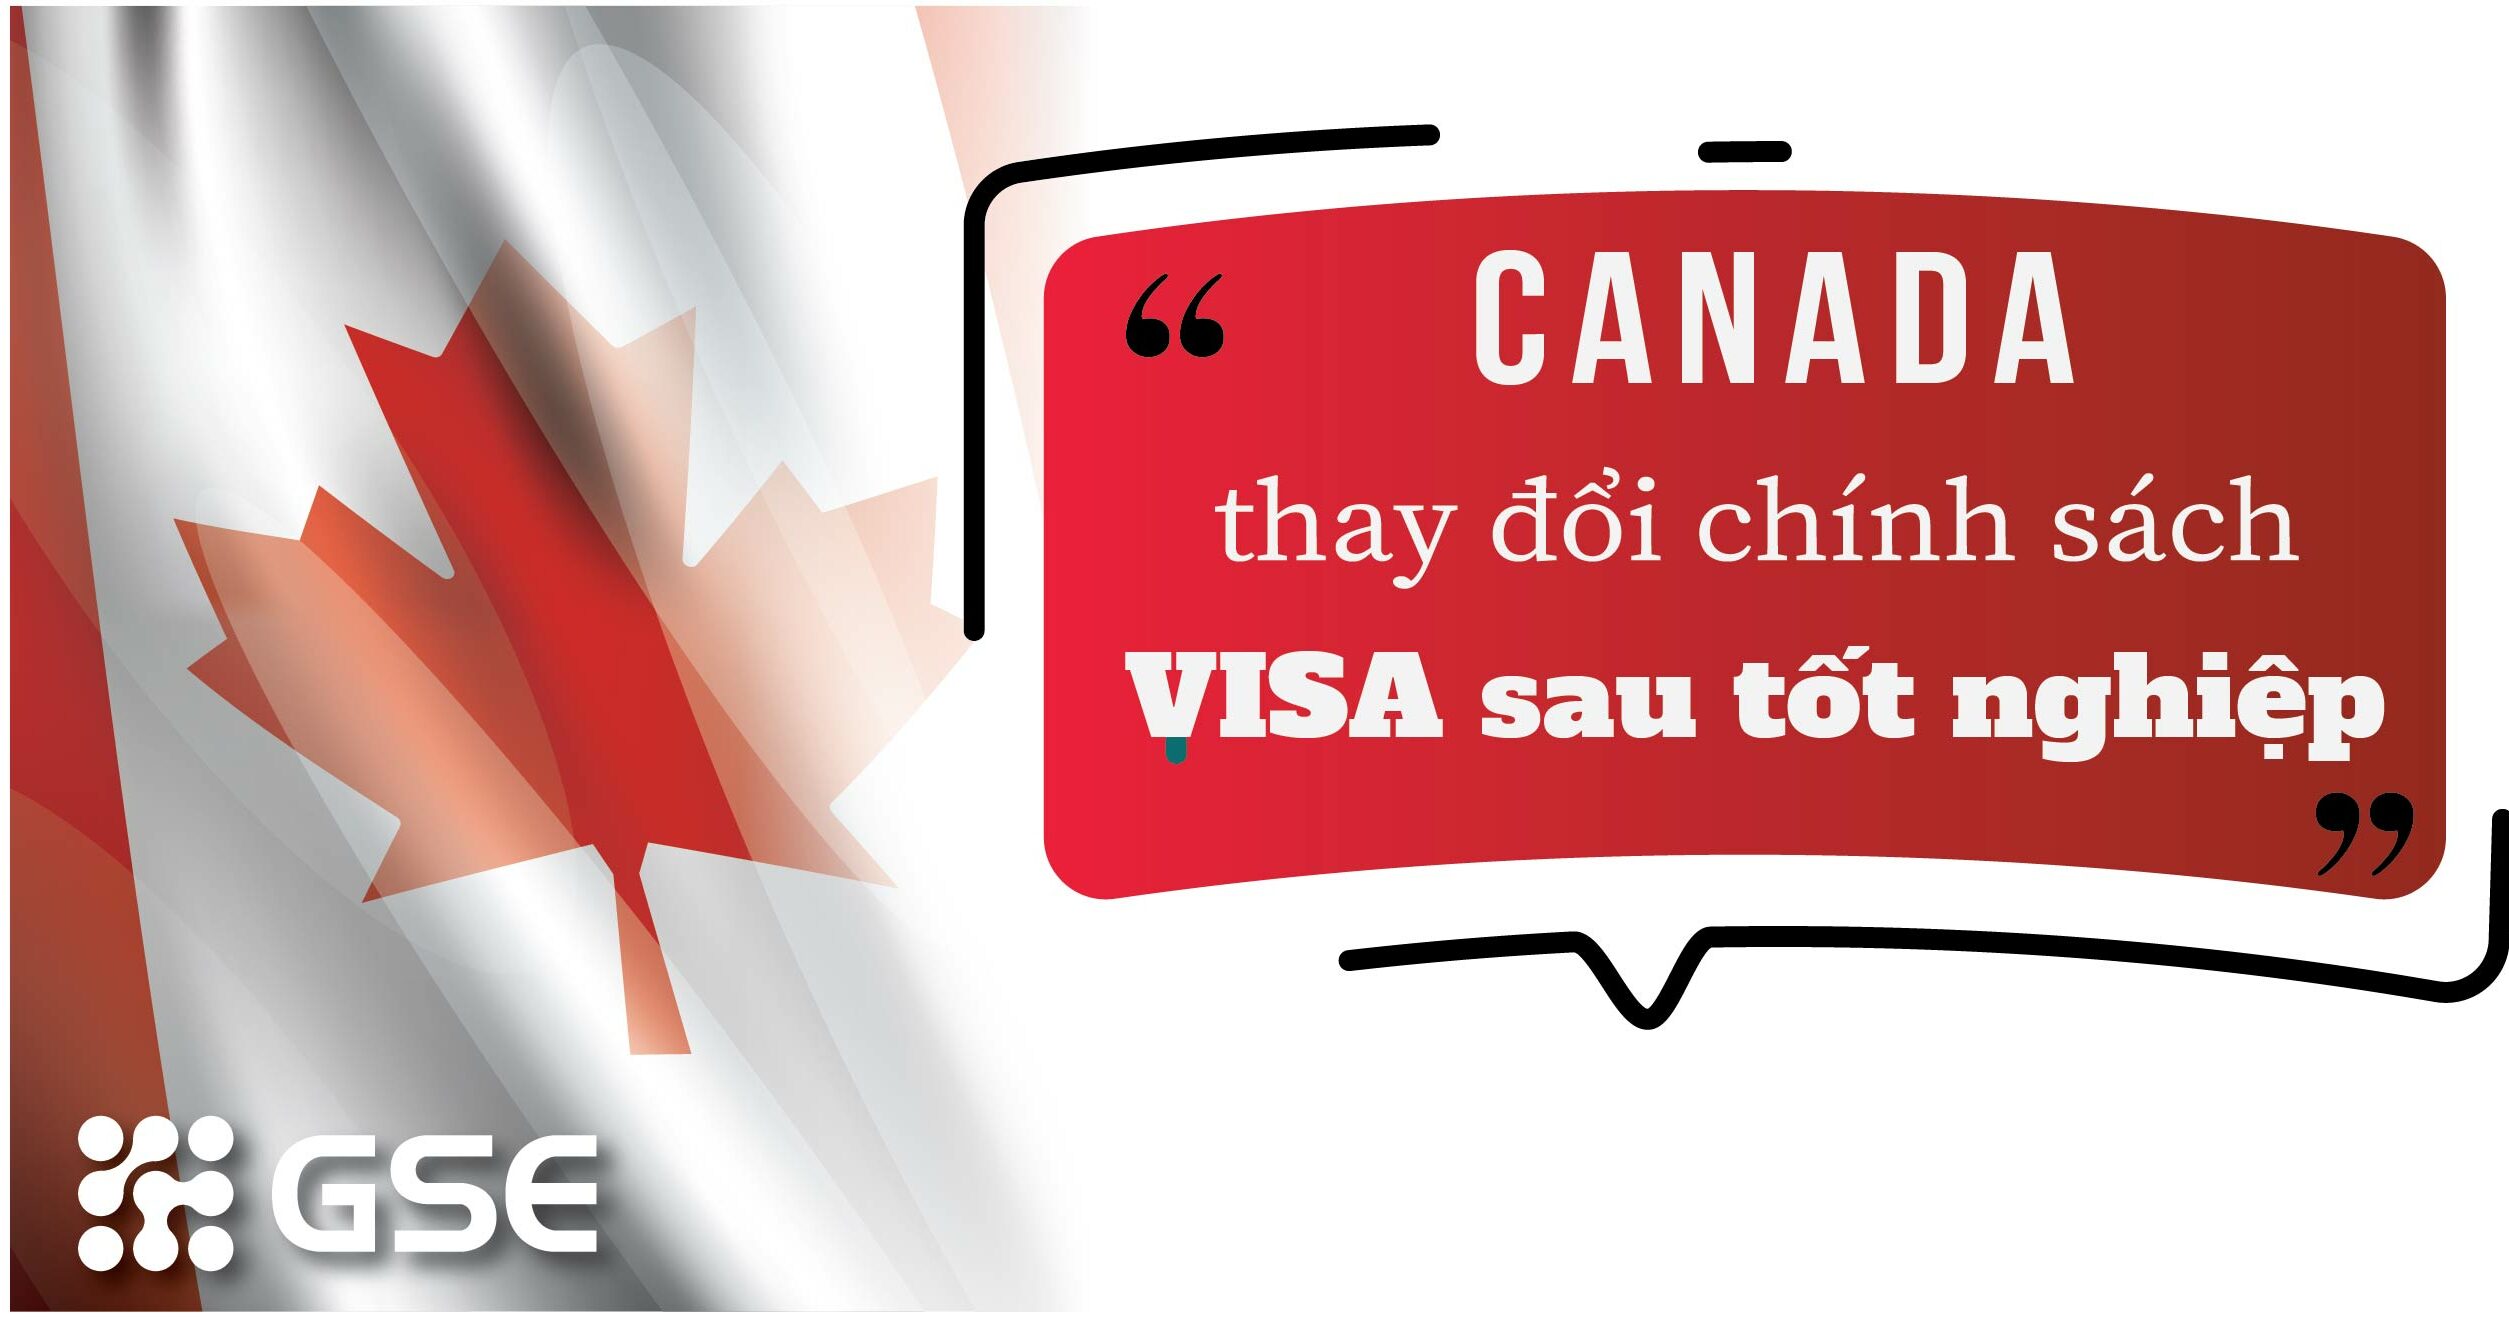 Chính sách visa sau tốt nghiệp hỗ trợ du học sinh từ chính phủ Canada